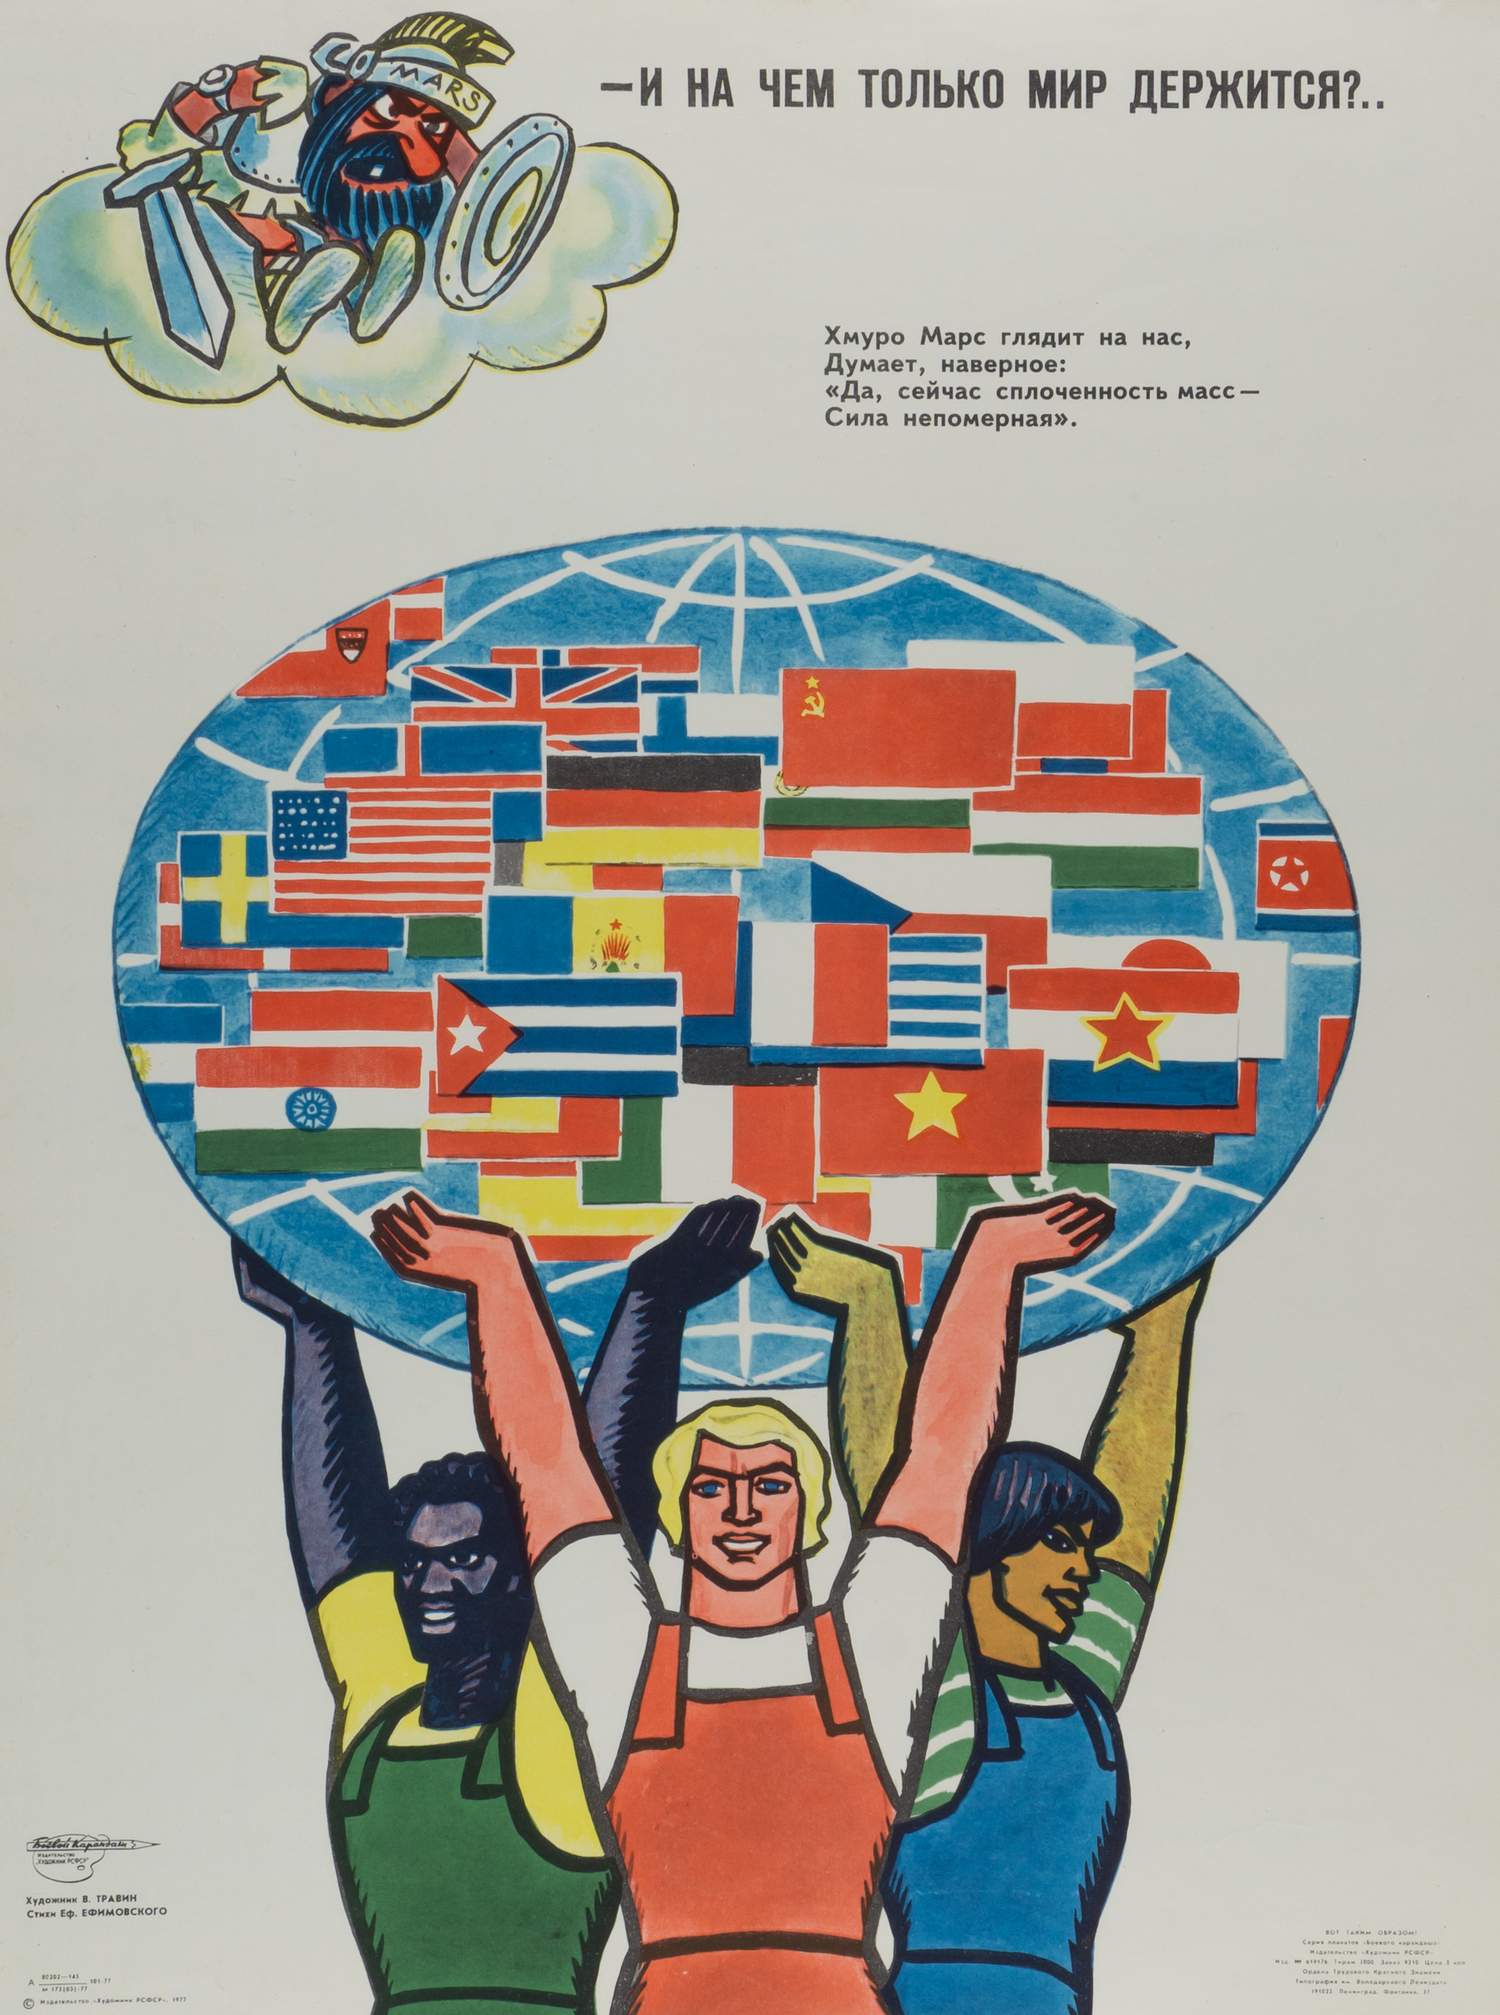 («Боевой карандаш») Травин В.А. Плакат «И на чём только мир держится?..» (Л., 1977).